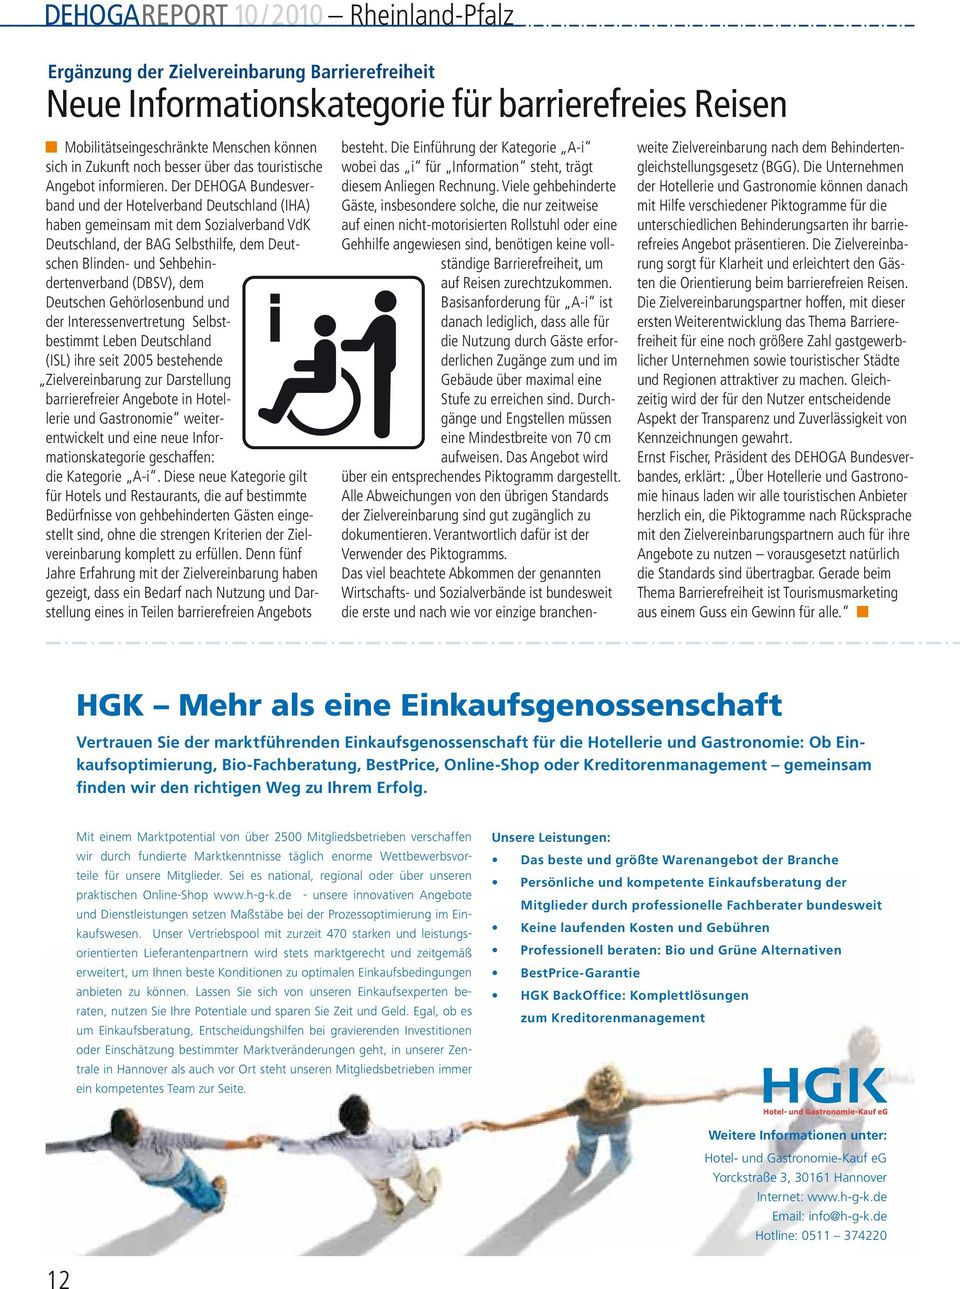 Der DEHOGA Bundesverband und der Hotelverband Deutschland (IHA) haben gemeinsam mit dem Sozialverband VdK Deutschland, der BAG Selbsthilfe, dem Deutschen Blinden- und Sehbehindertenverband (DBSV),